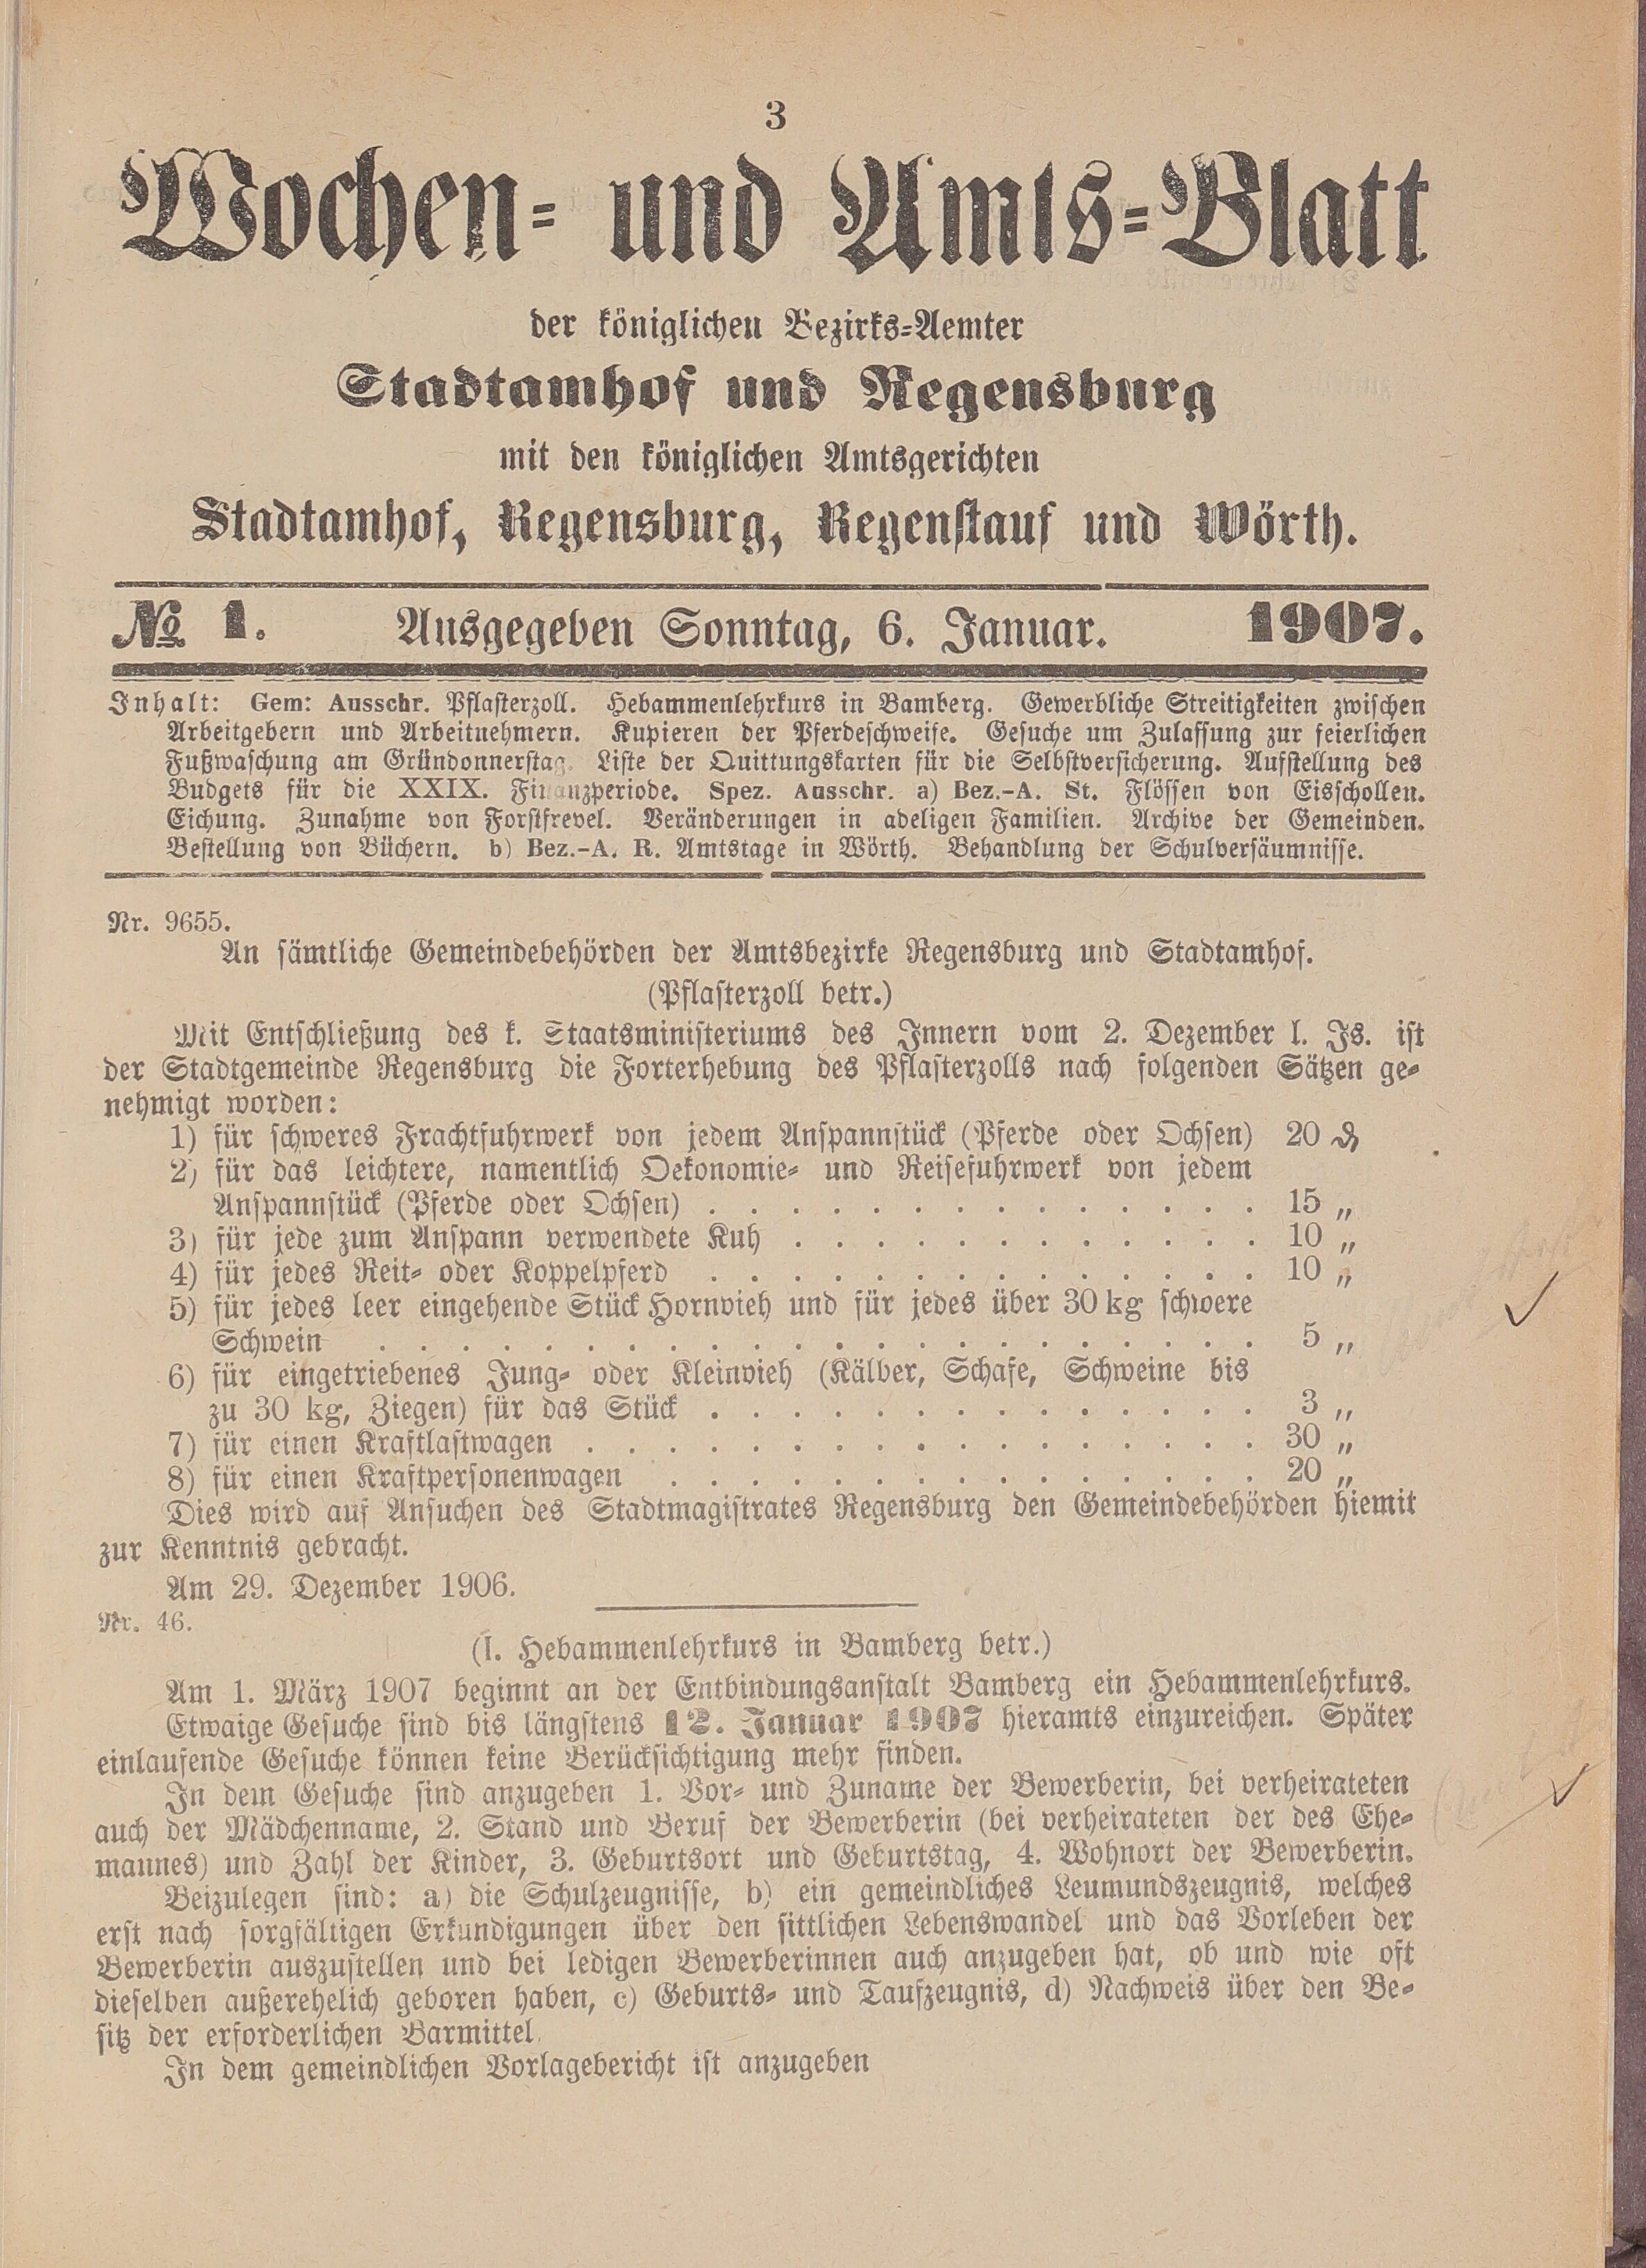 8. amtsblatt-stadtamhof-regensburg-1907-01-06-n1_0100